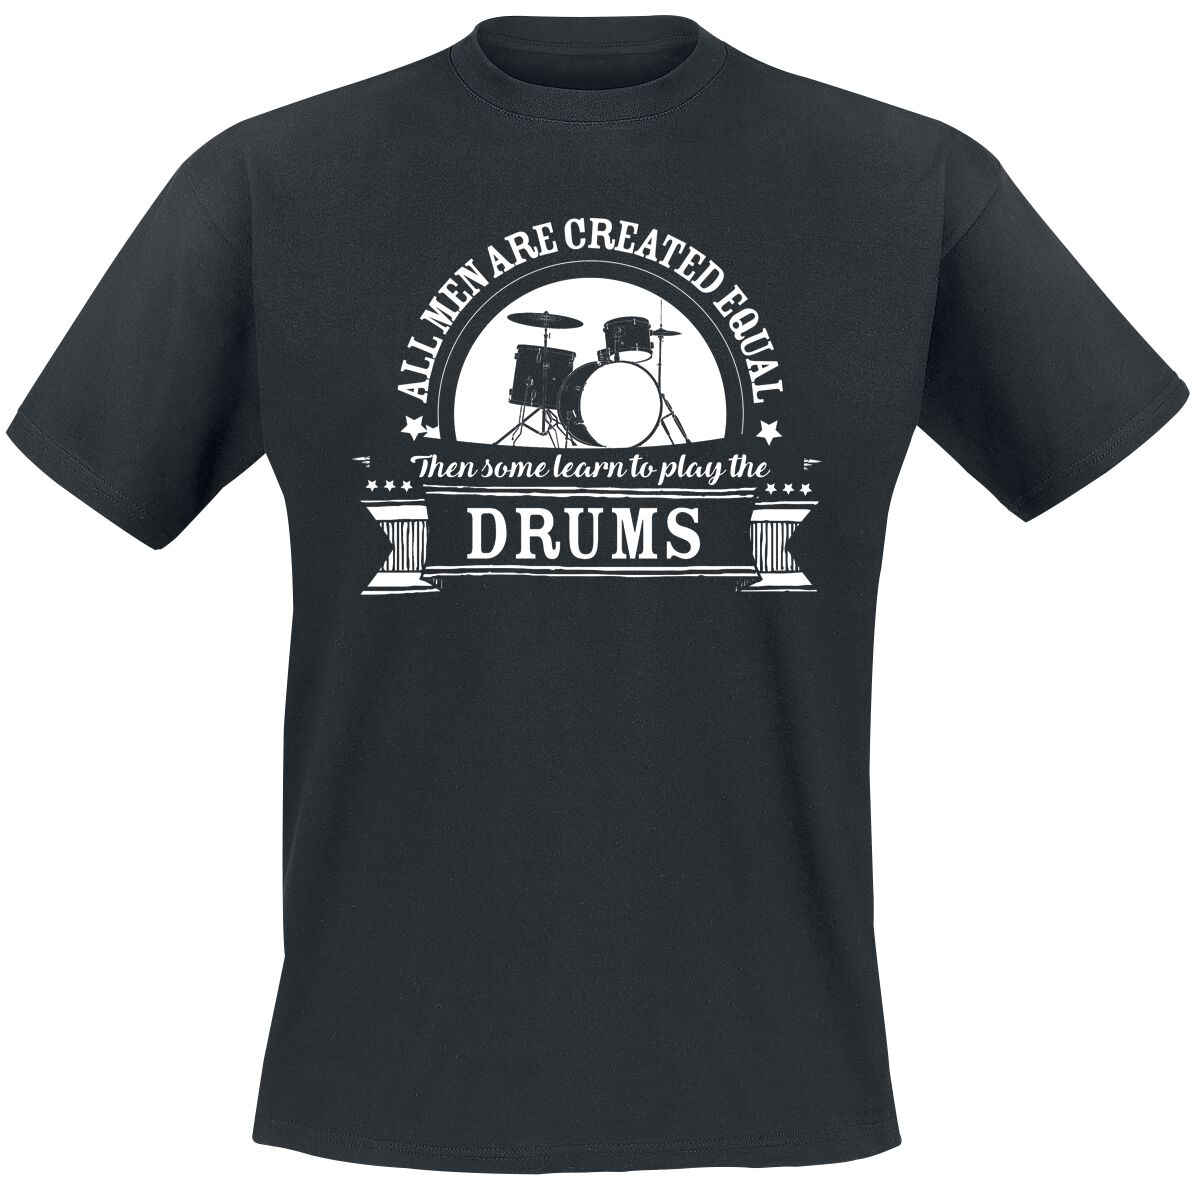 Sprüche T-Shirt - All Men Are Equal Then Some learn To Play The Drums - L bis 5XL - für Männer - Größe XXL - schwarz